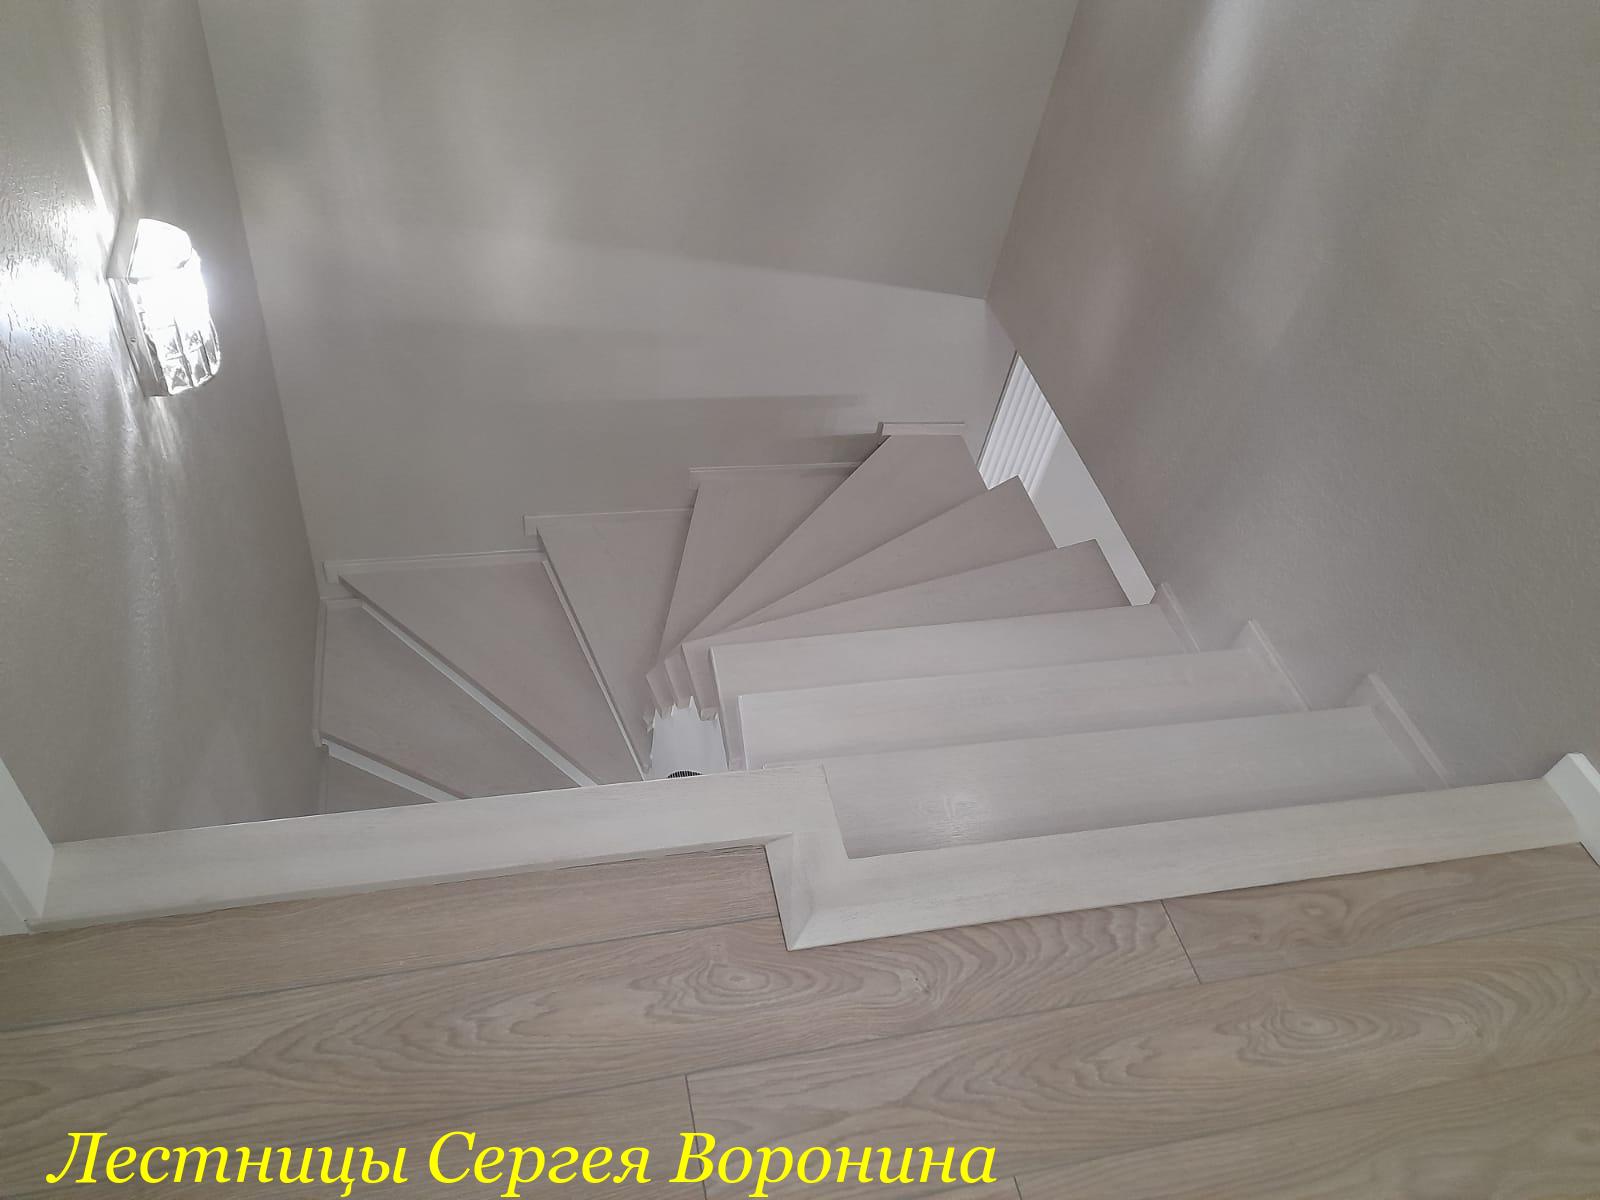 Межэтажные Лестницы Сергея Воронина, Воронеж - 2